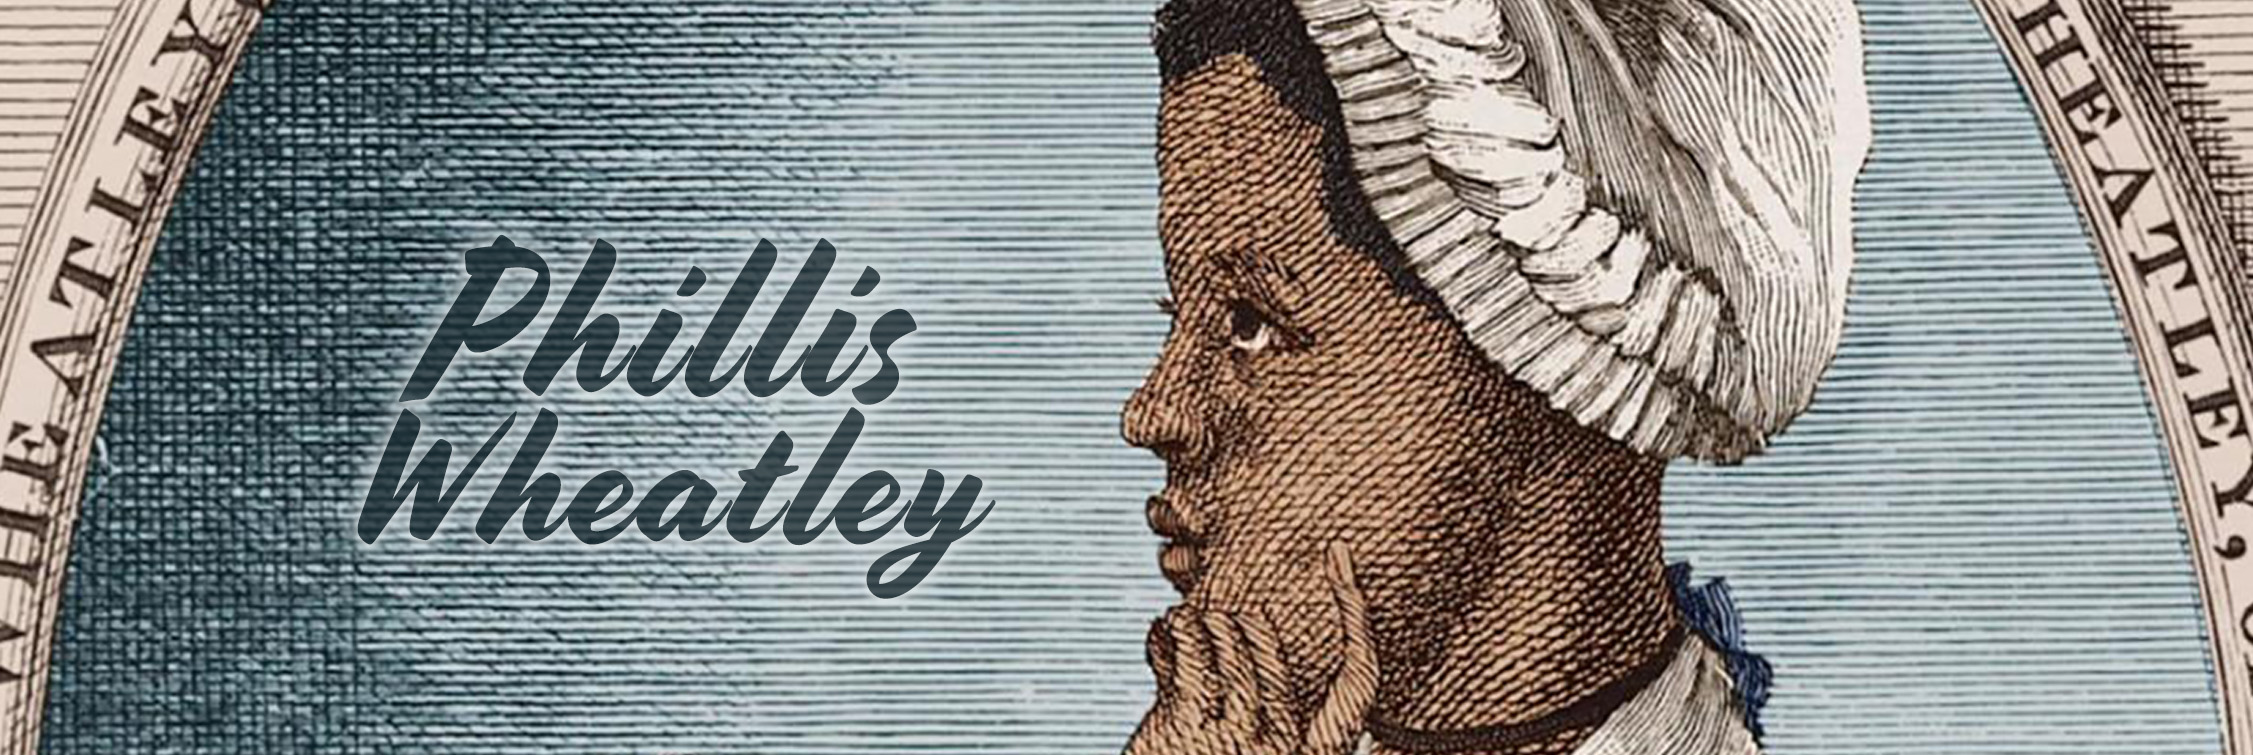 Phillis Wheatley, la primera escritora afroamericana en publicar un libro de poesía